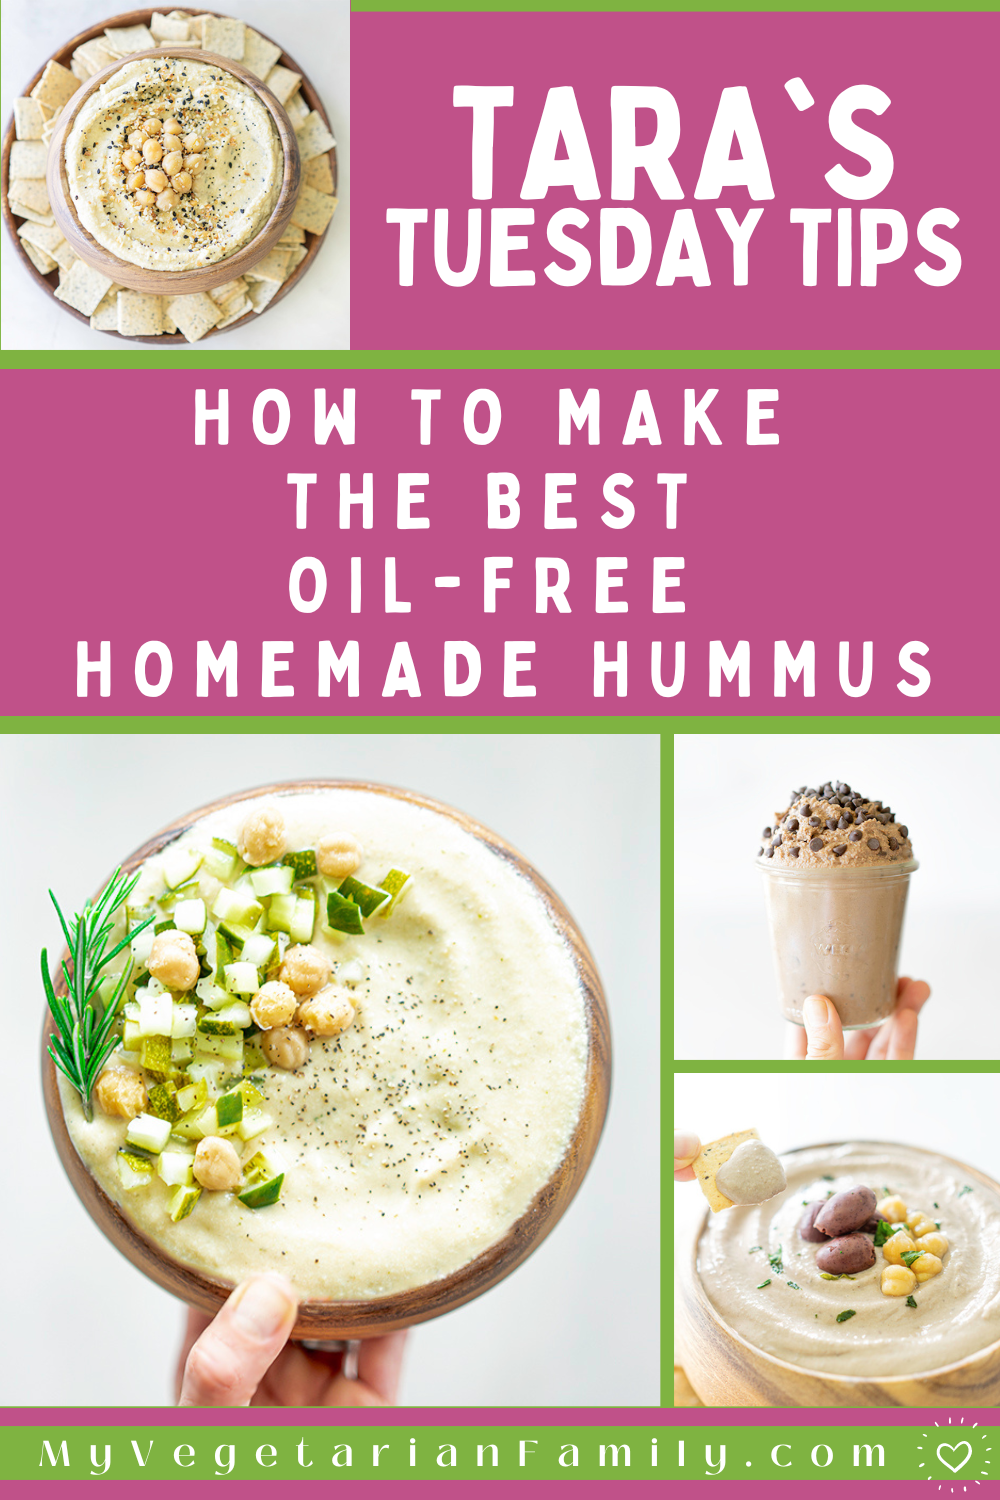 How To Make Homemade Oil-Free Hummus | My Vegetarian Family | Tara's Tuesday Tips #oilfreehummus